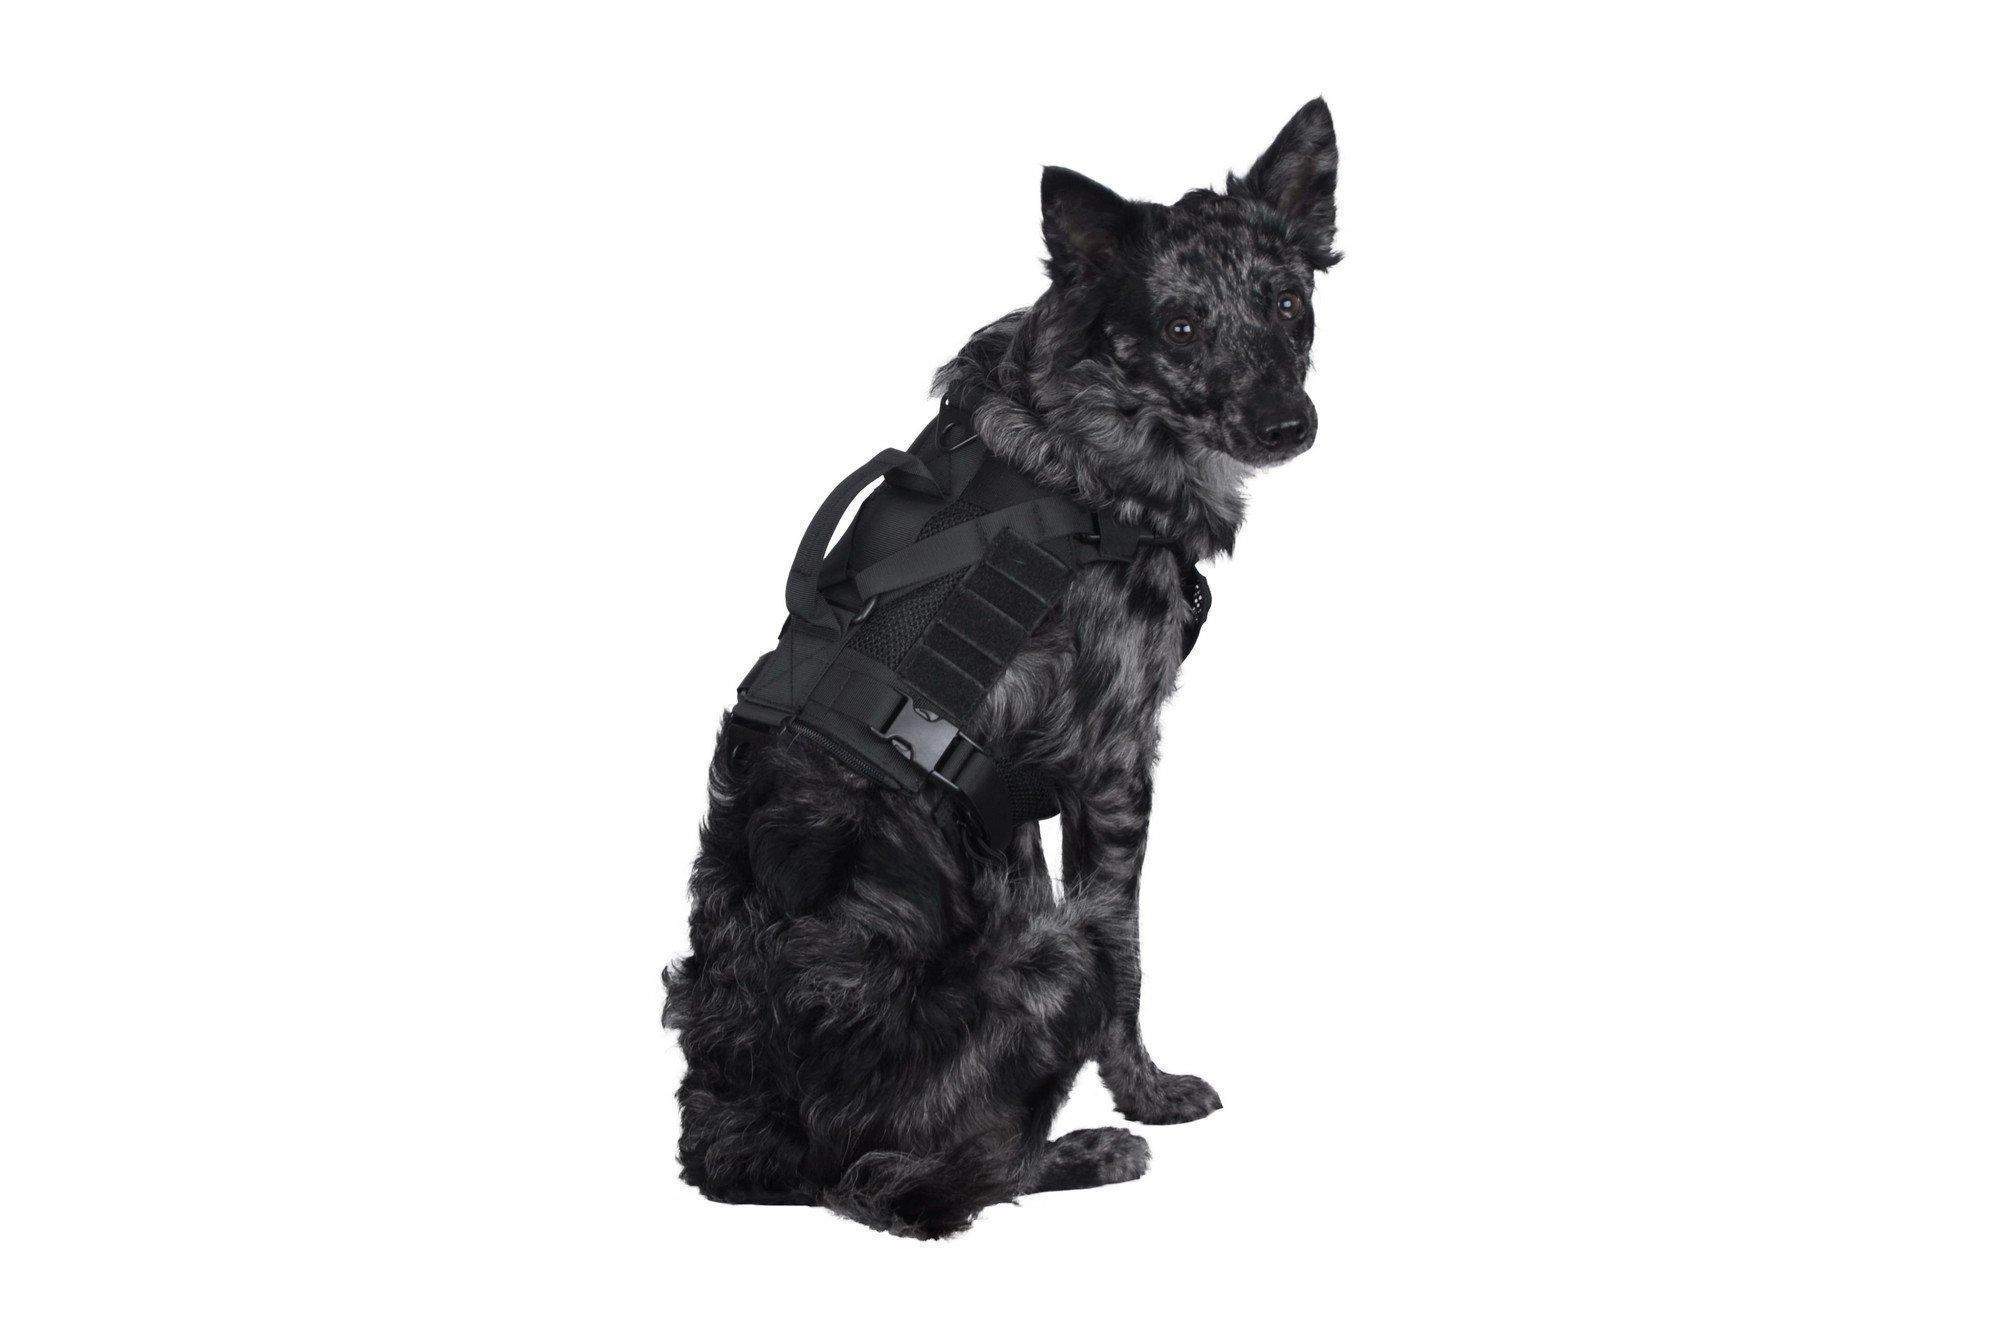 Primal Gear Ochia taktiset koiran valjaat - musta